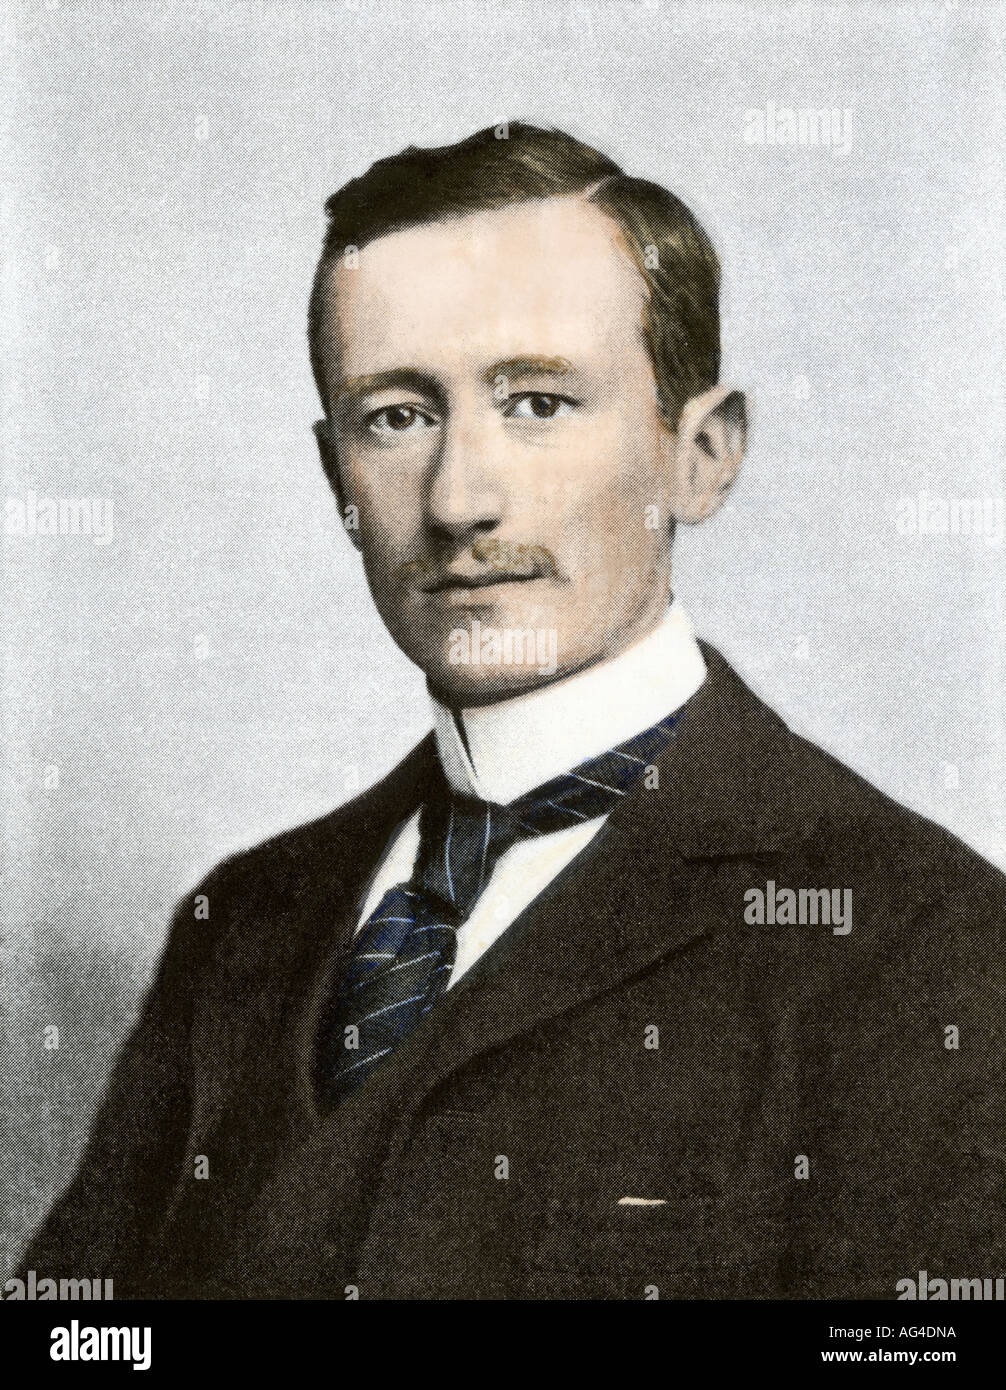 Retrato de Guglielmo Marconi. Medias tintas coloreadas a mano de una fotografía Foto de stock